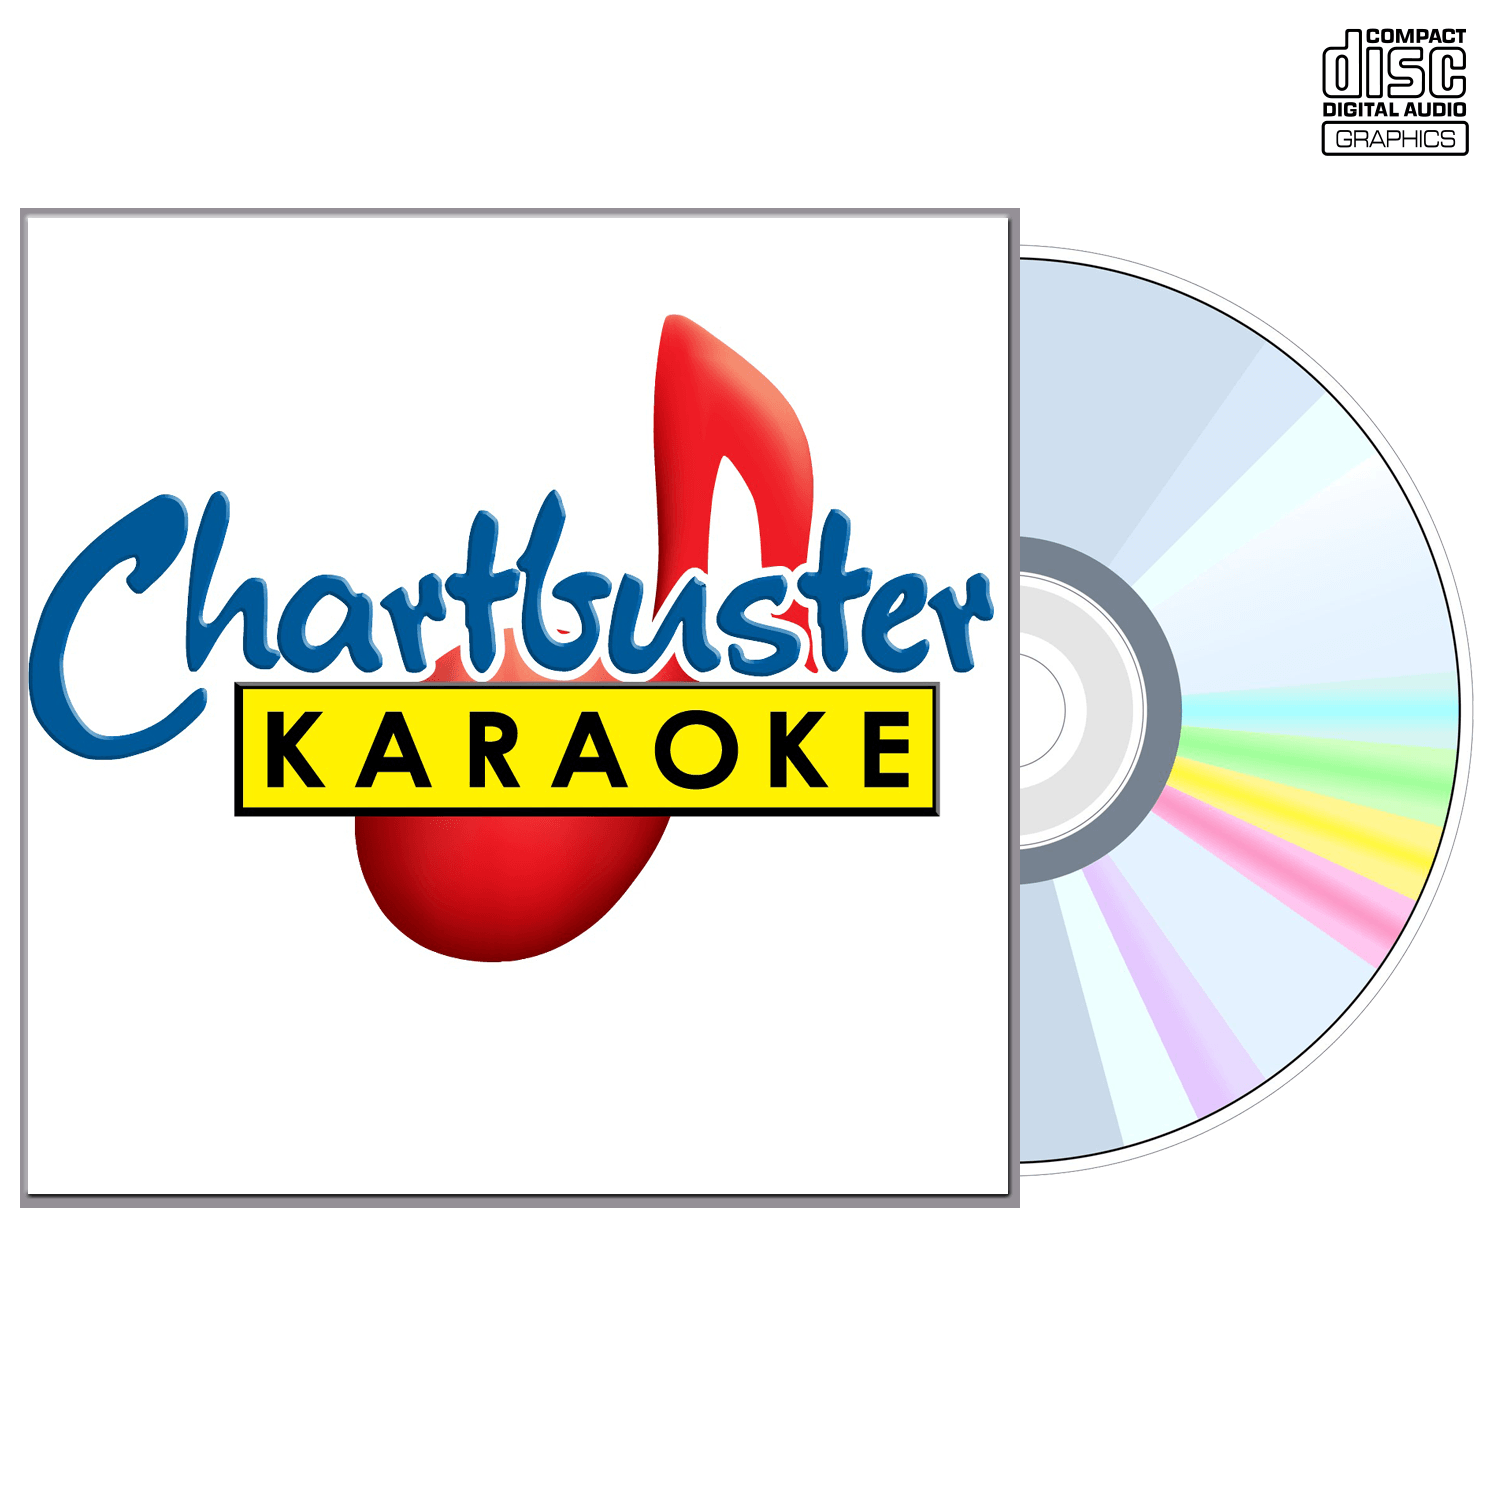 Train - CD+G - Chartbuster Karaoke - Karaoke Home Entertainment